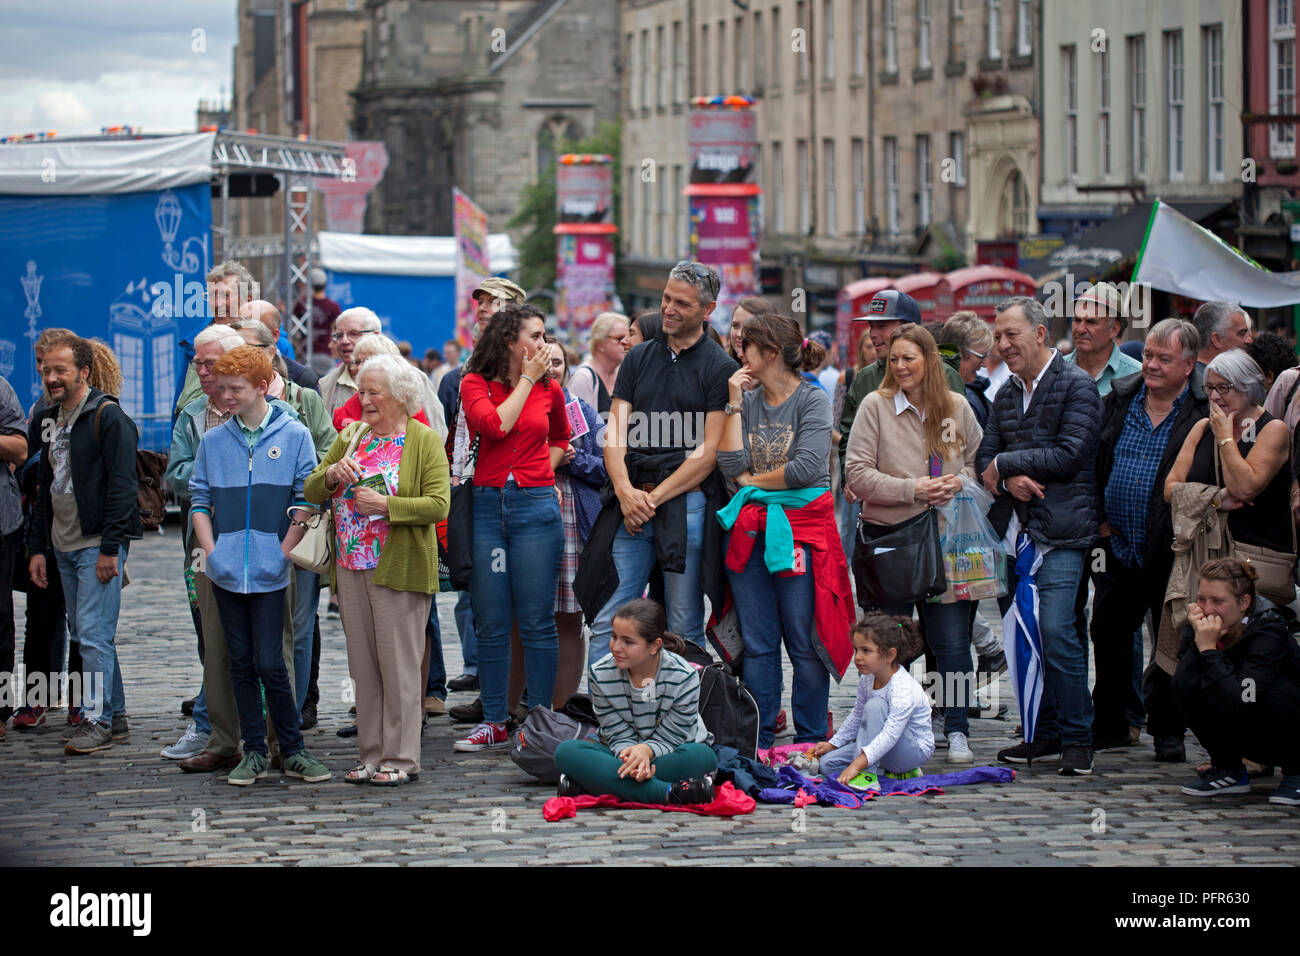 Edinburgh Fringe Festival, Royal Mile, Scotland, UK 2018 Stock Photo